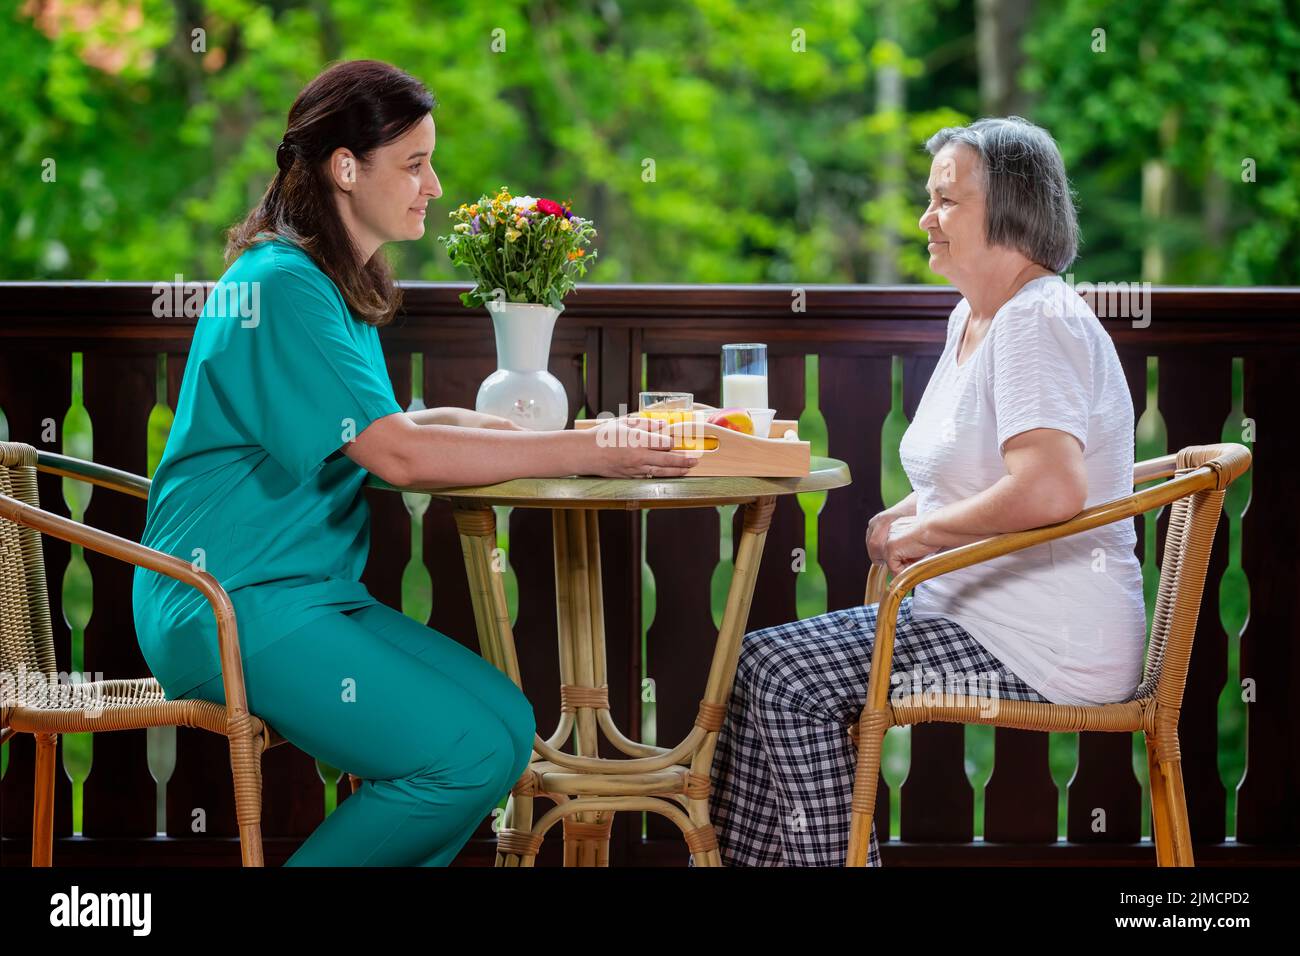 Mitarbeiter im Gesundheitswesen, der einem älteren Patienten eine Mahlzeit serviert Stockfoto